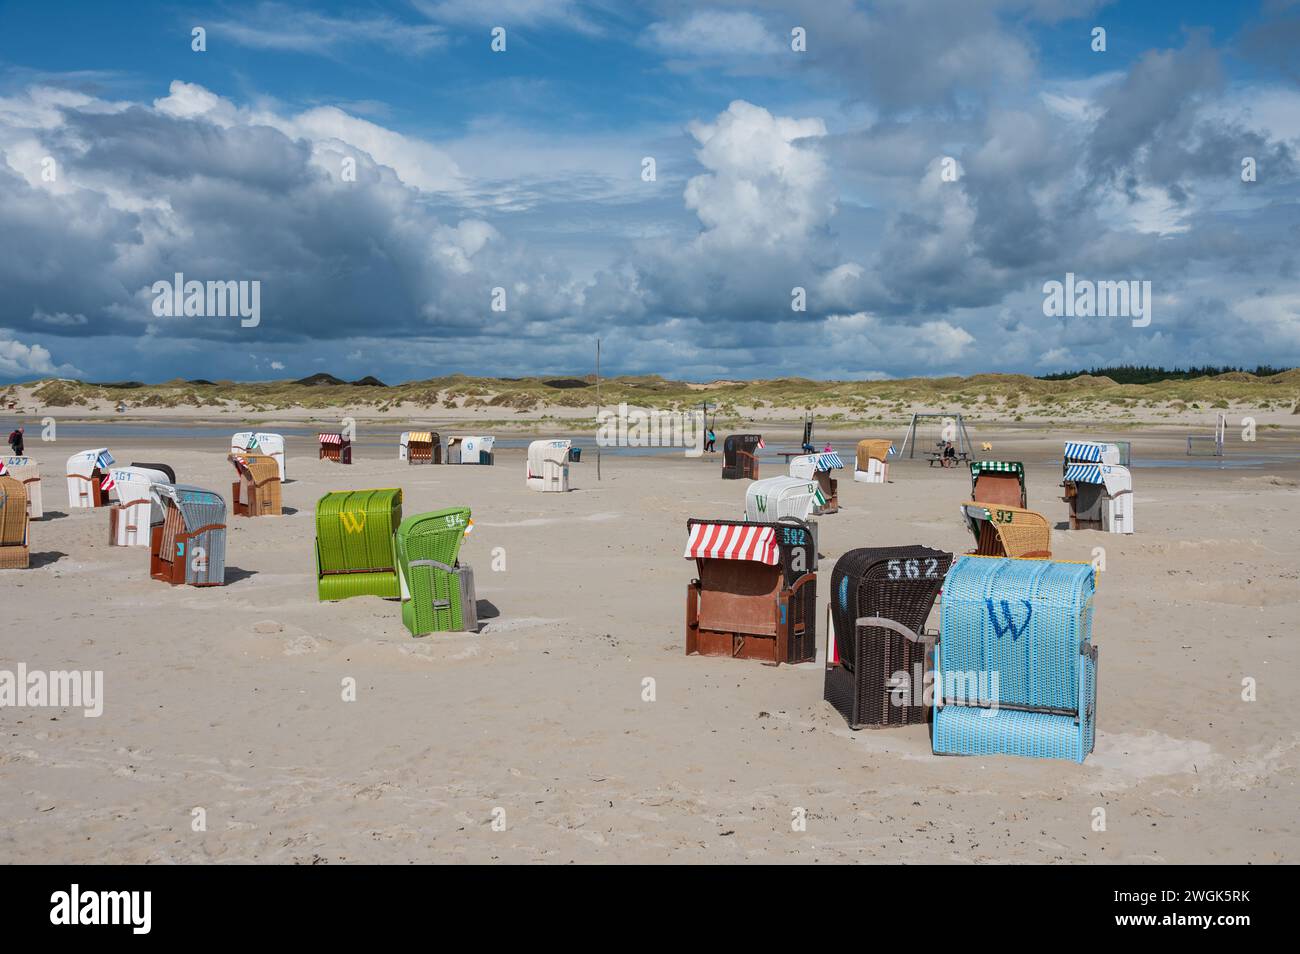 Strandleben am feinen Sandstrand von Norddorf auf der Nordseeinsel Amrum mit dramatischen Wolkenformationen Stock Photo